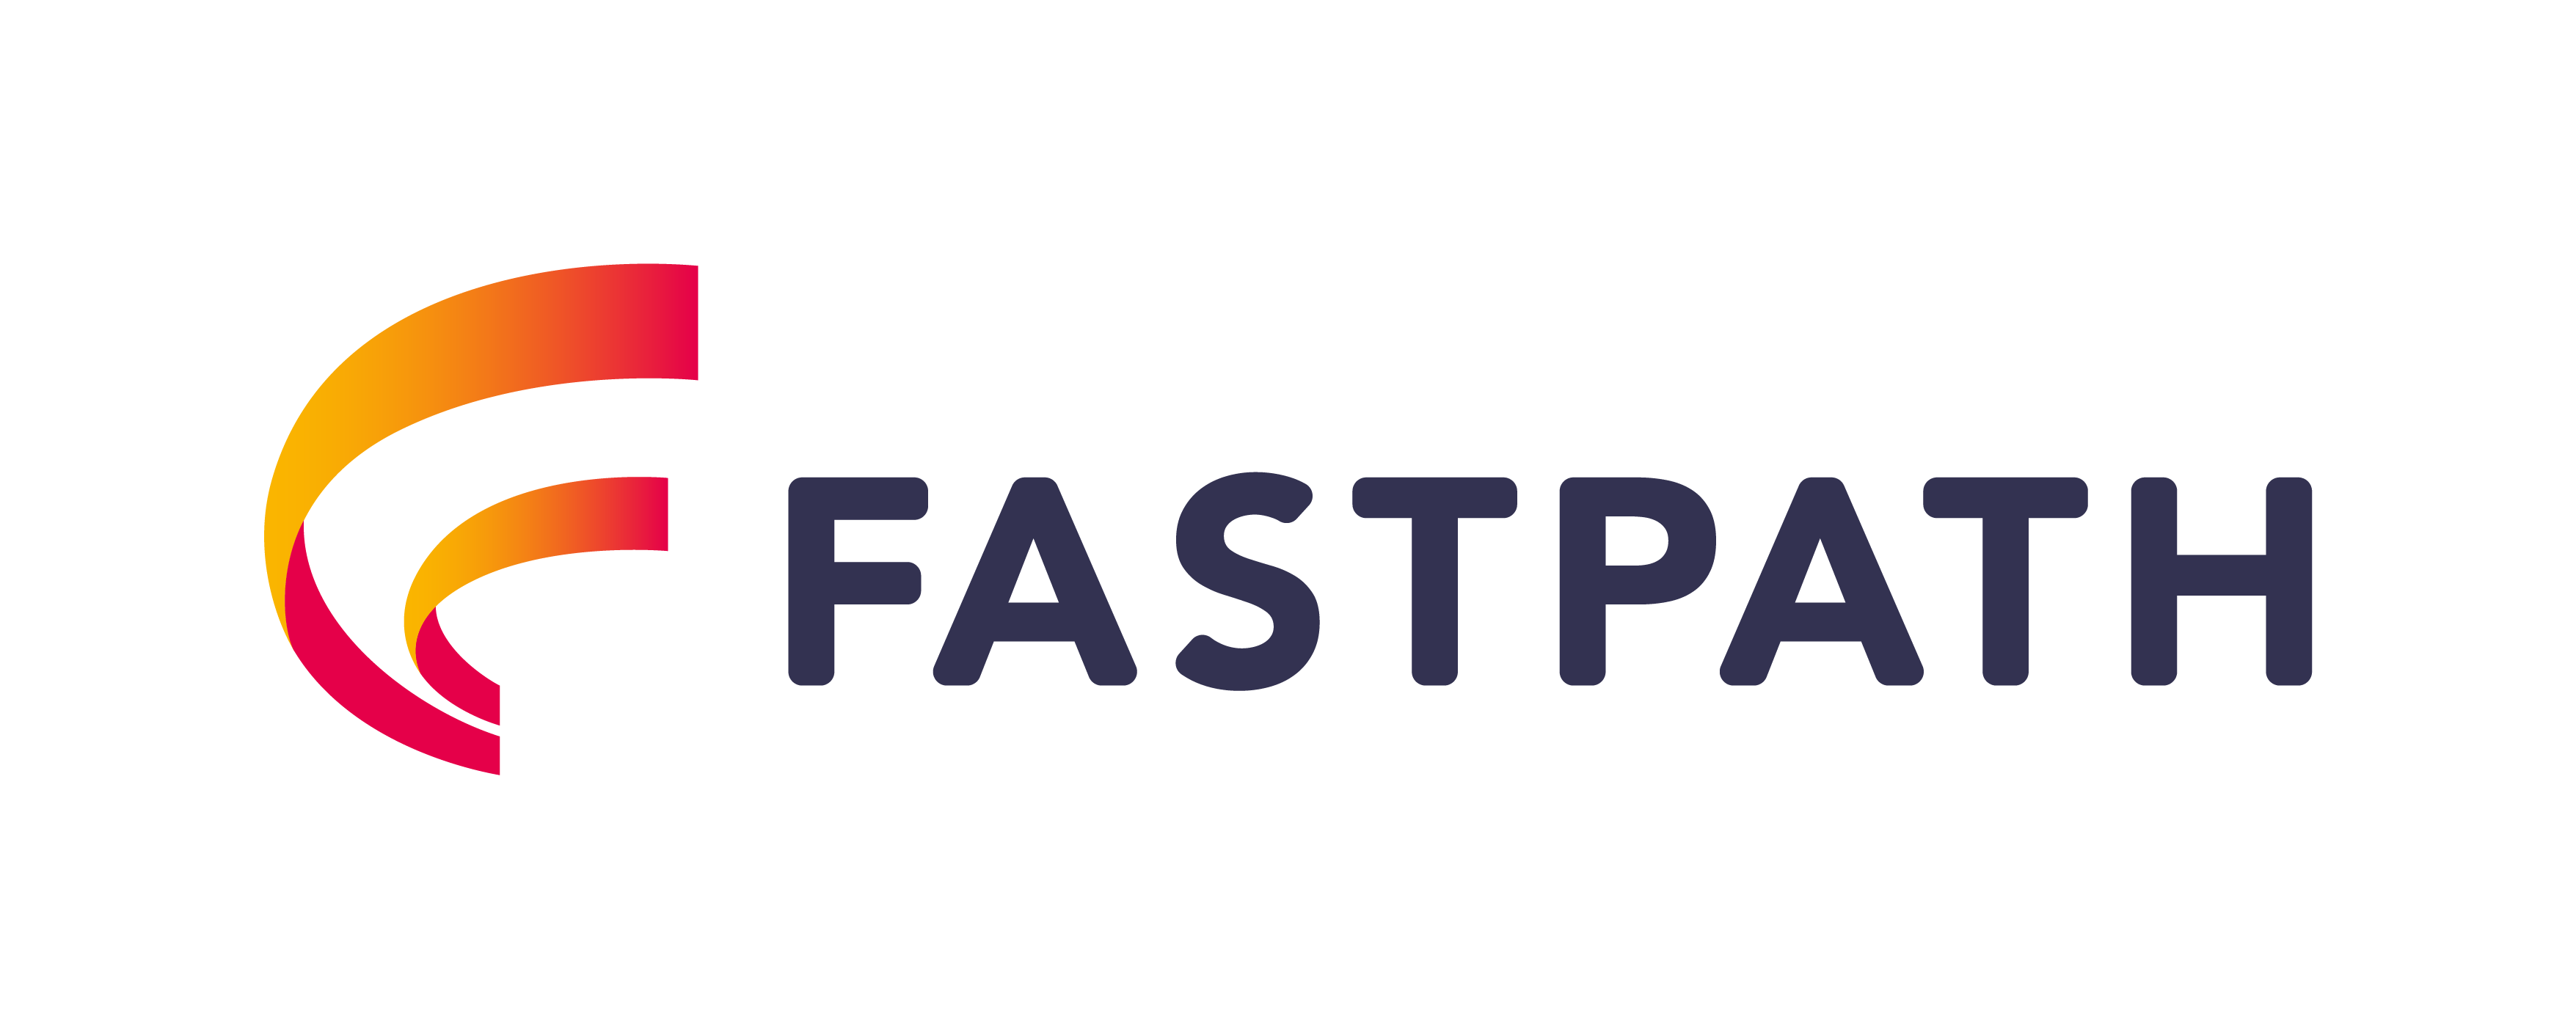 Fastpath Logo